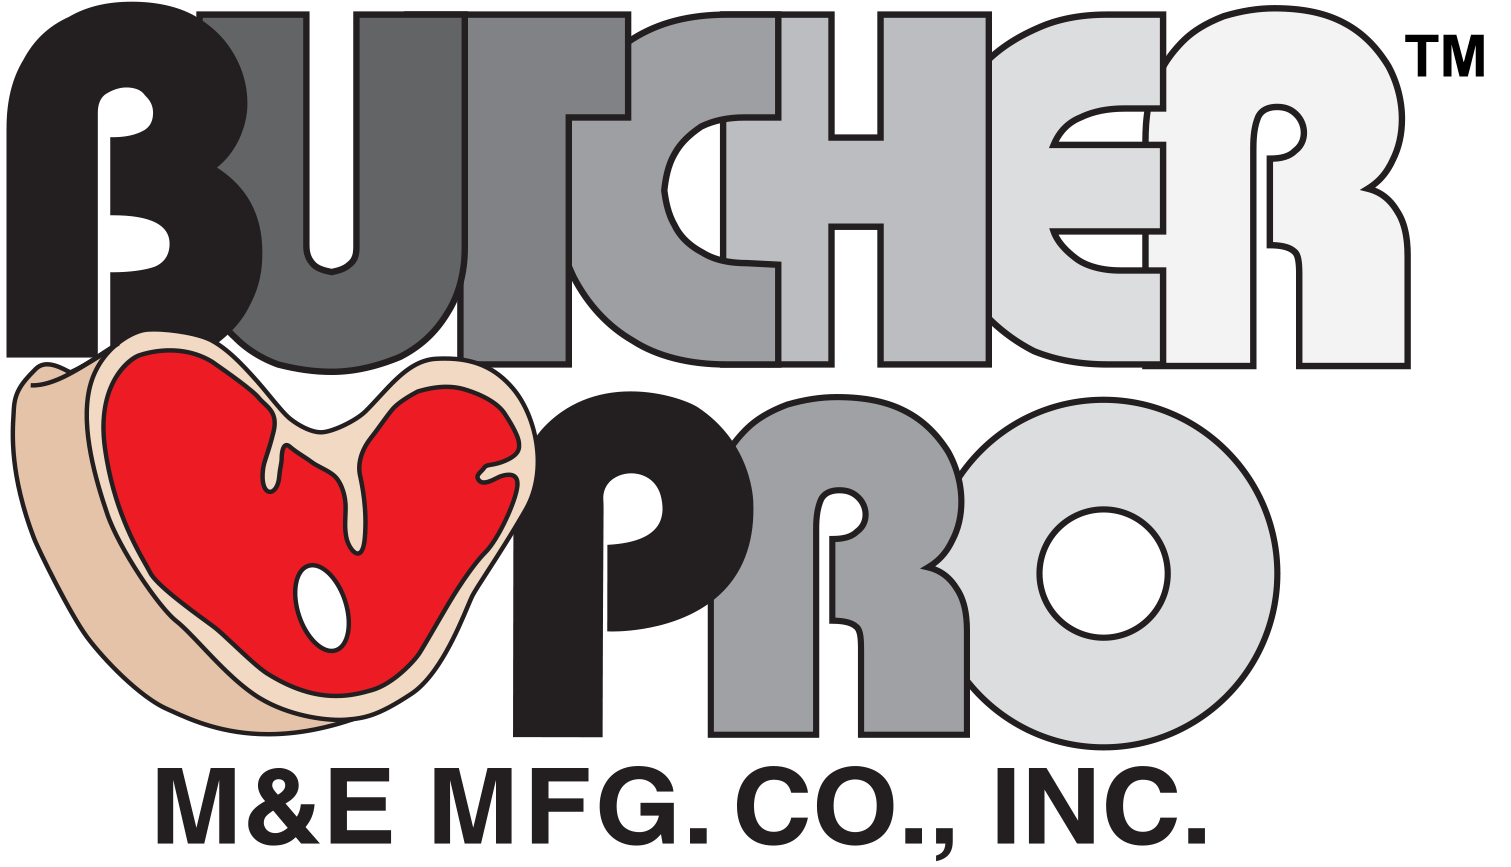 Butcher-Pro-w-M+E